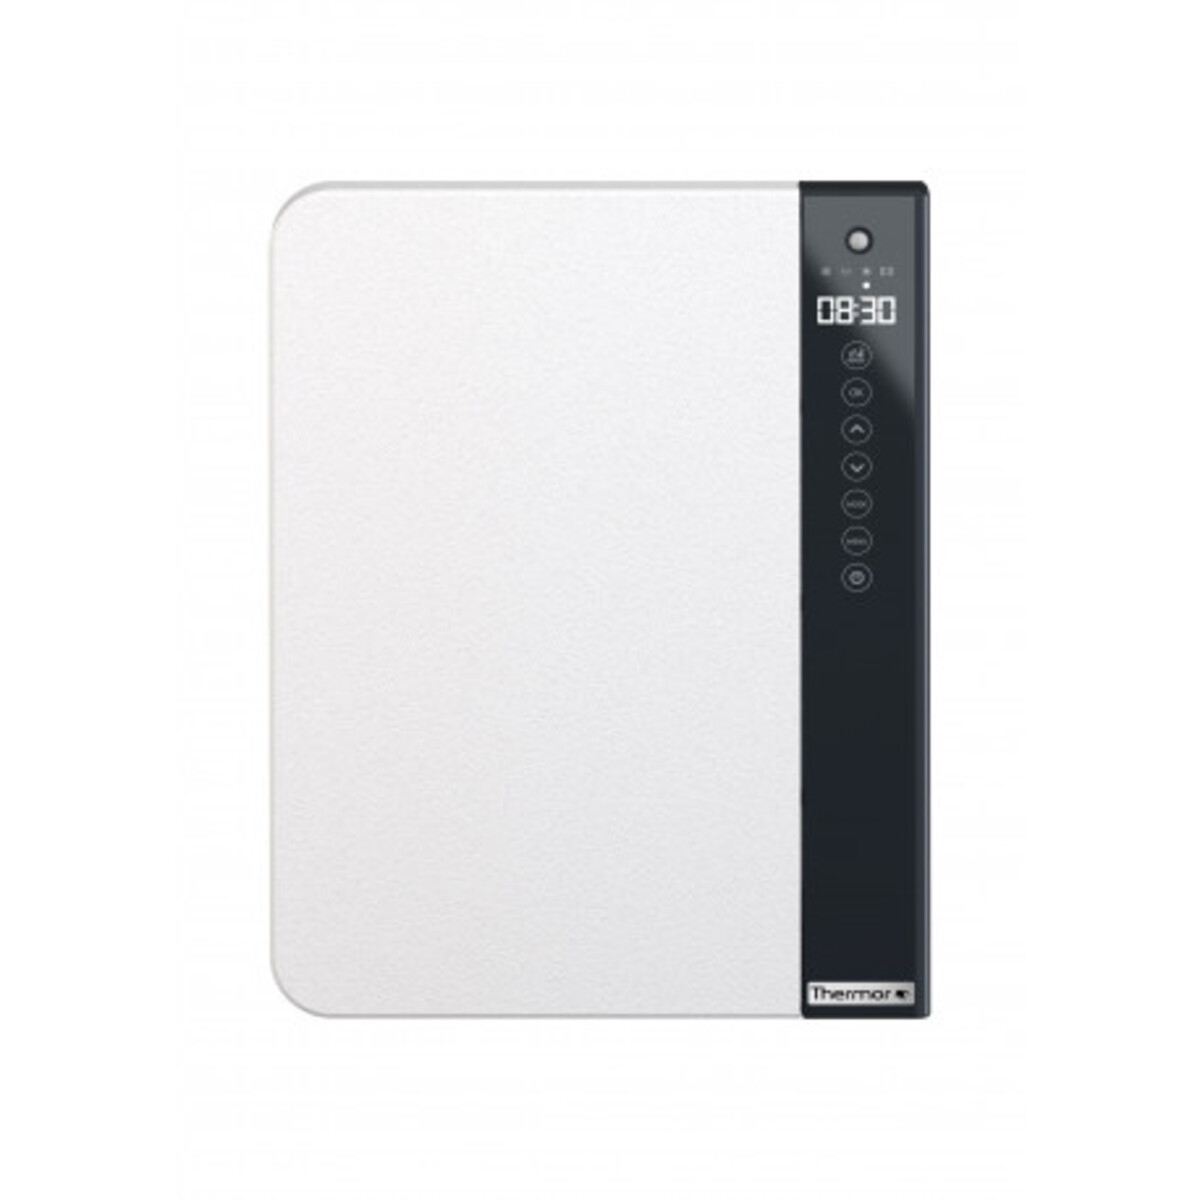 Illico 3 - radiateur thermor salle de bain - thermor blanc granit